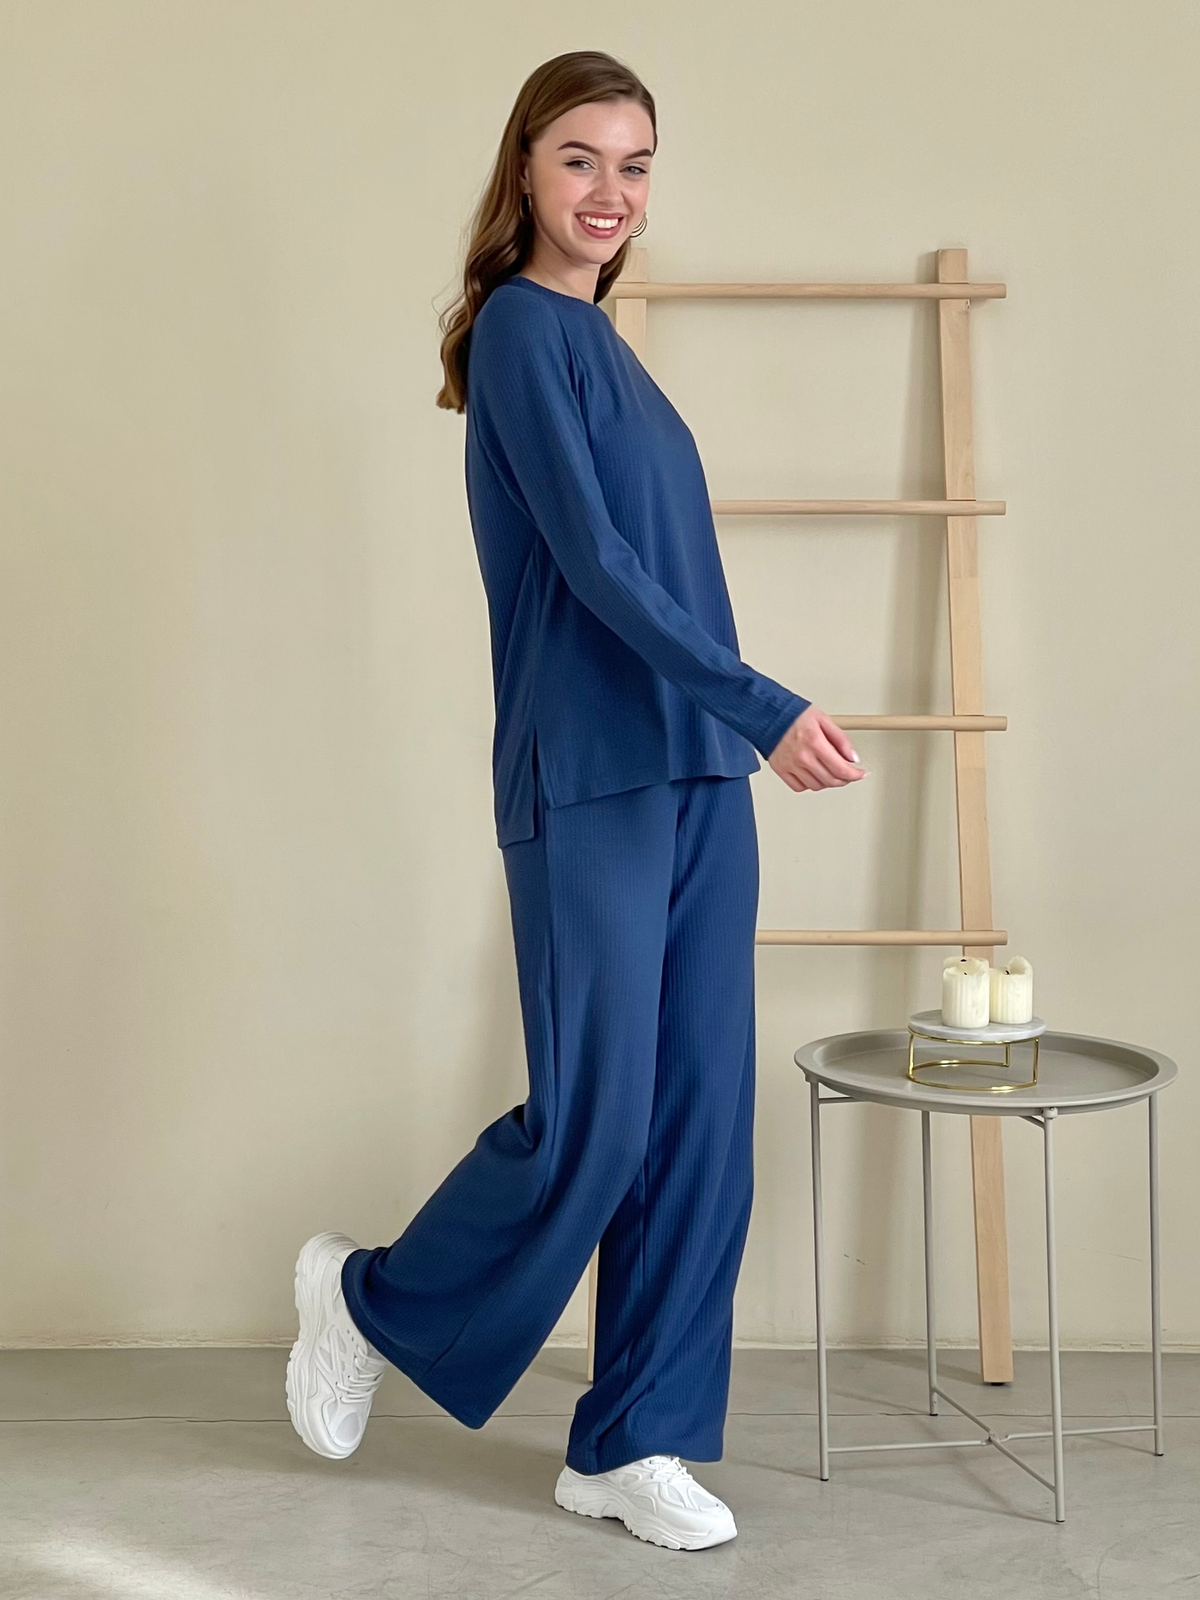 Купить Костюм с широкими брюками в рубчик синий Merlini Менто 100001163, размер 42-44 (S-M) в интернет-магазине